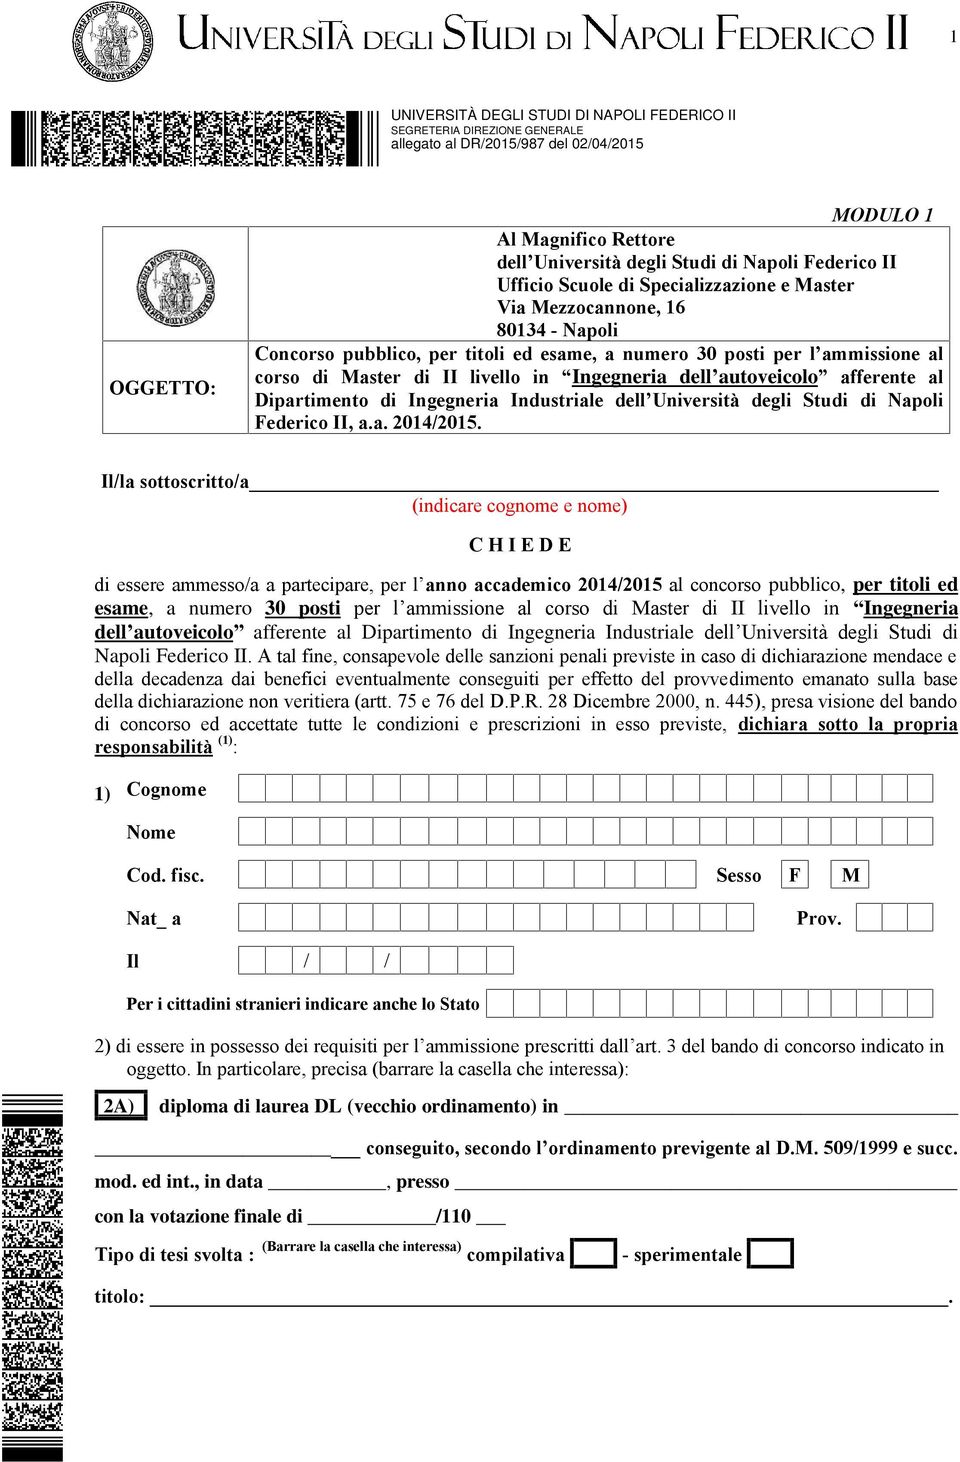 Ingegneria Industriale dell Università degli Studi di Napoli Federico II, a.a. 2014/2015.